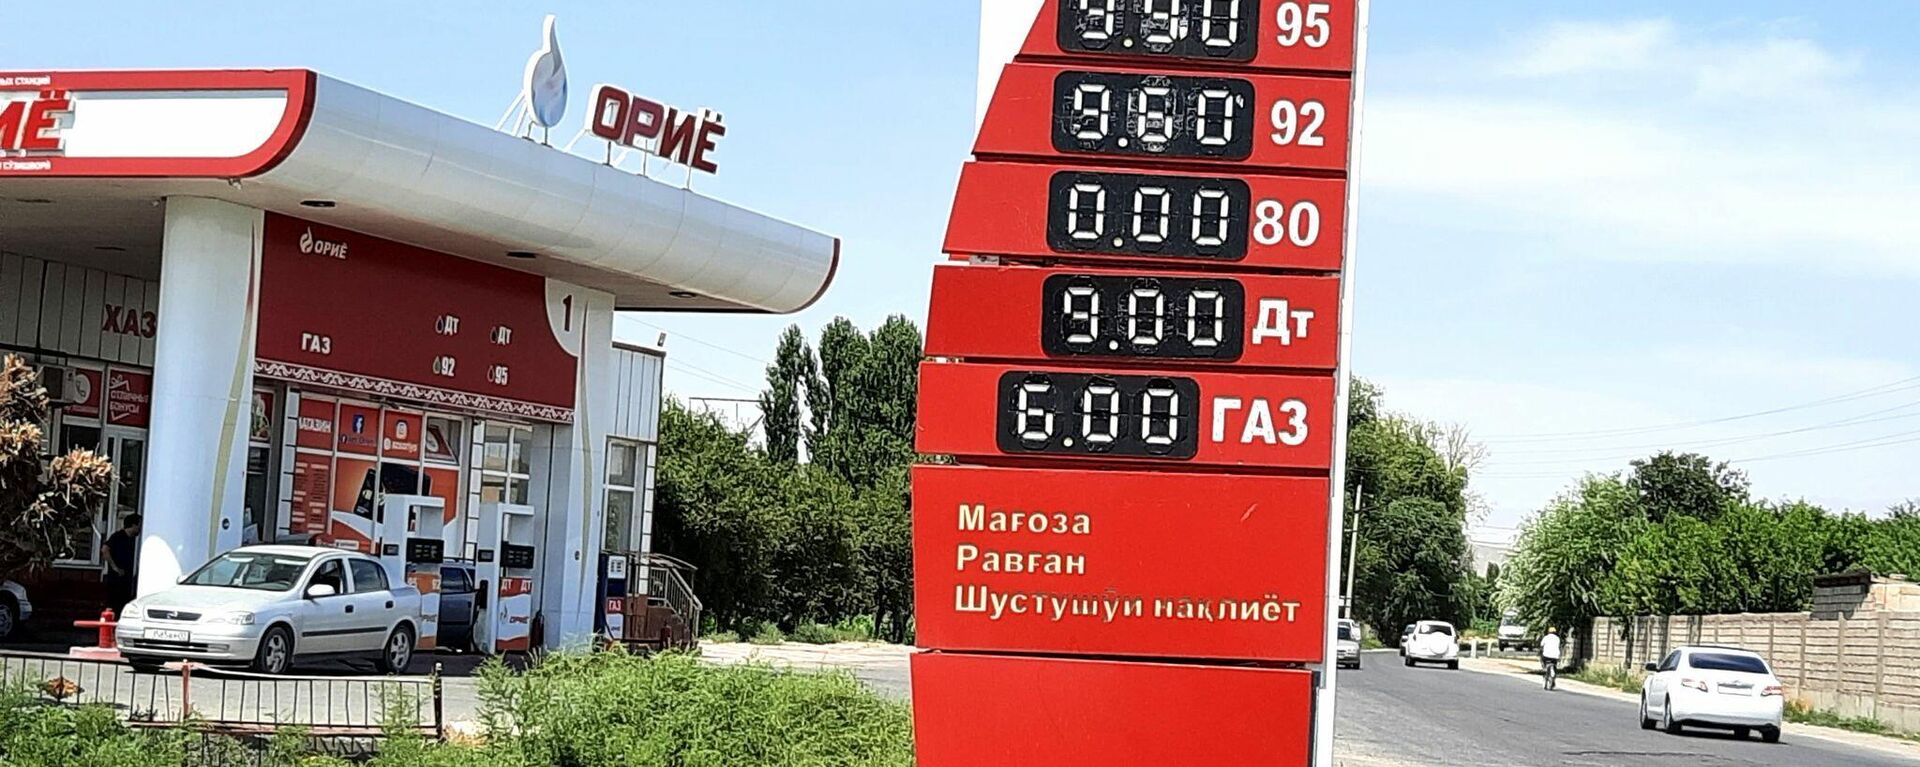 Цены на топливо в Таджикистане на 31 июля 2021 года - Sputnik Тоҷикистон, 1920, 31.07.2021